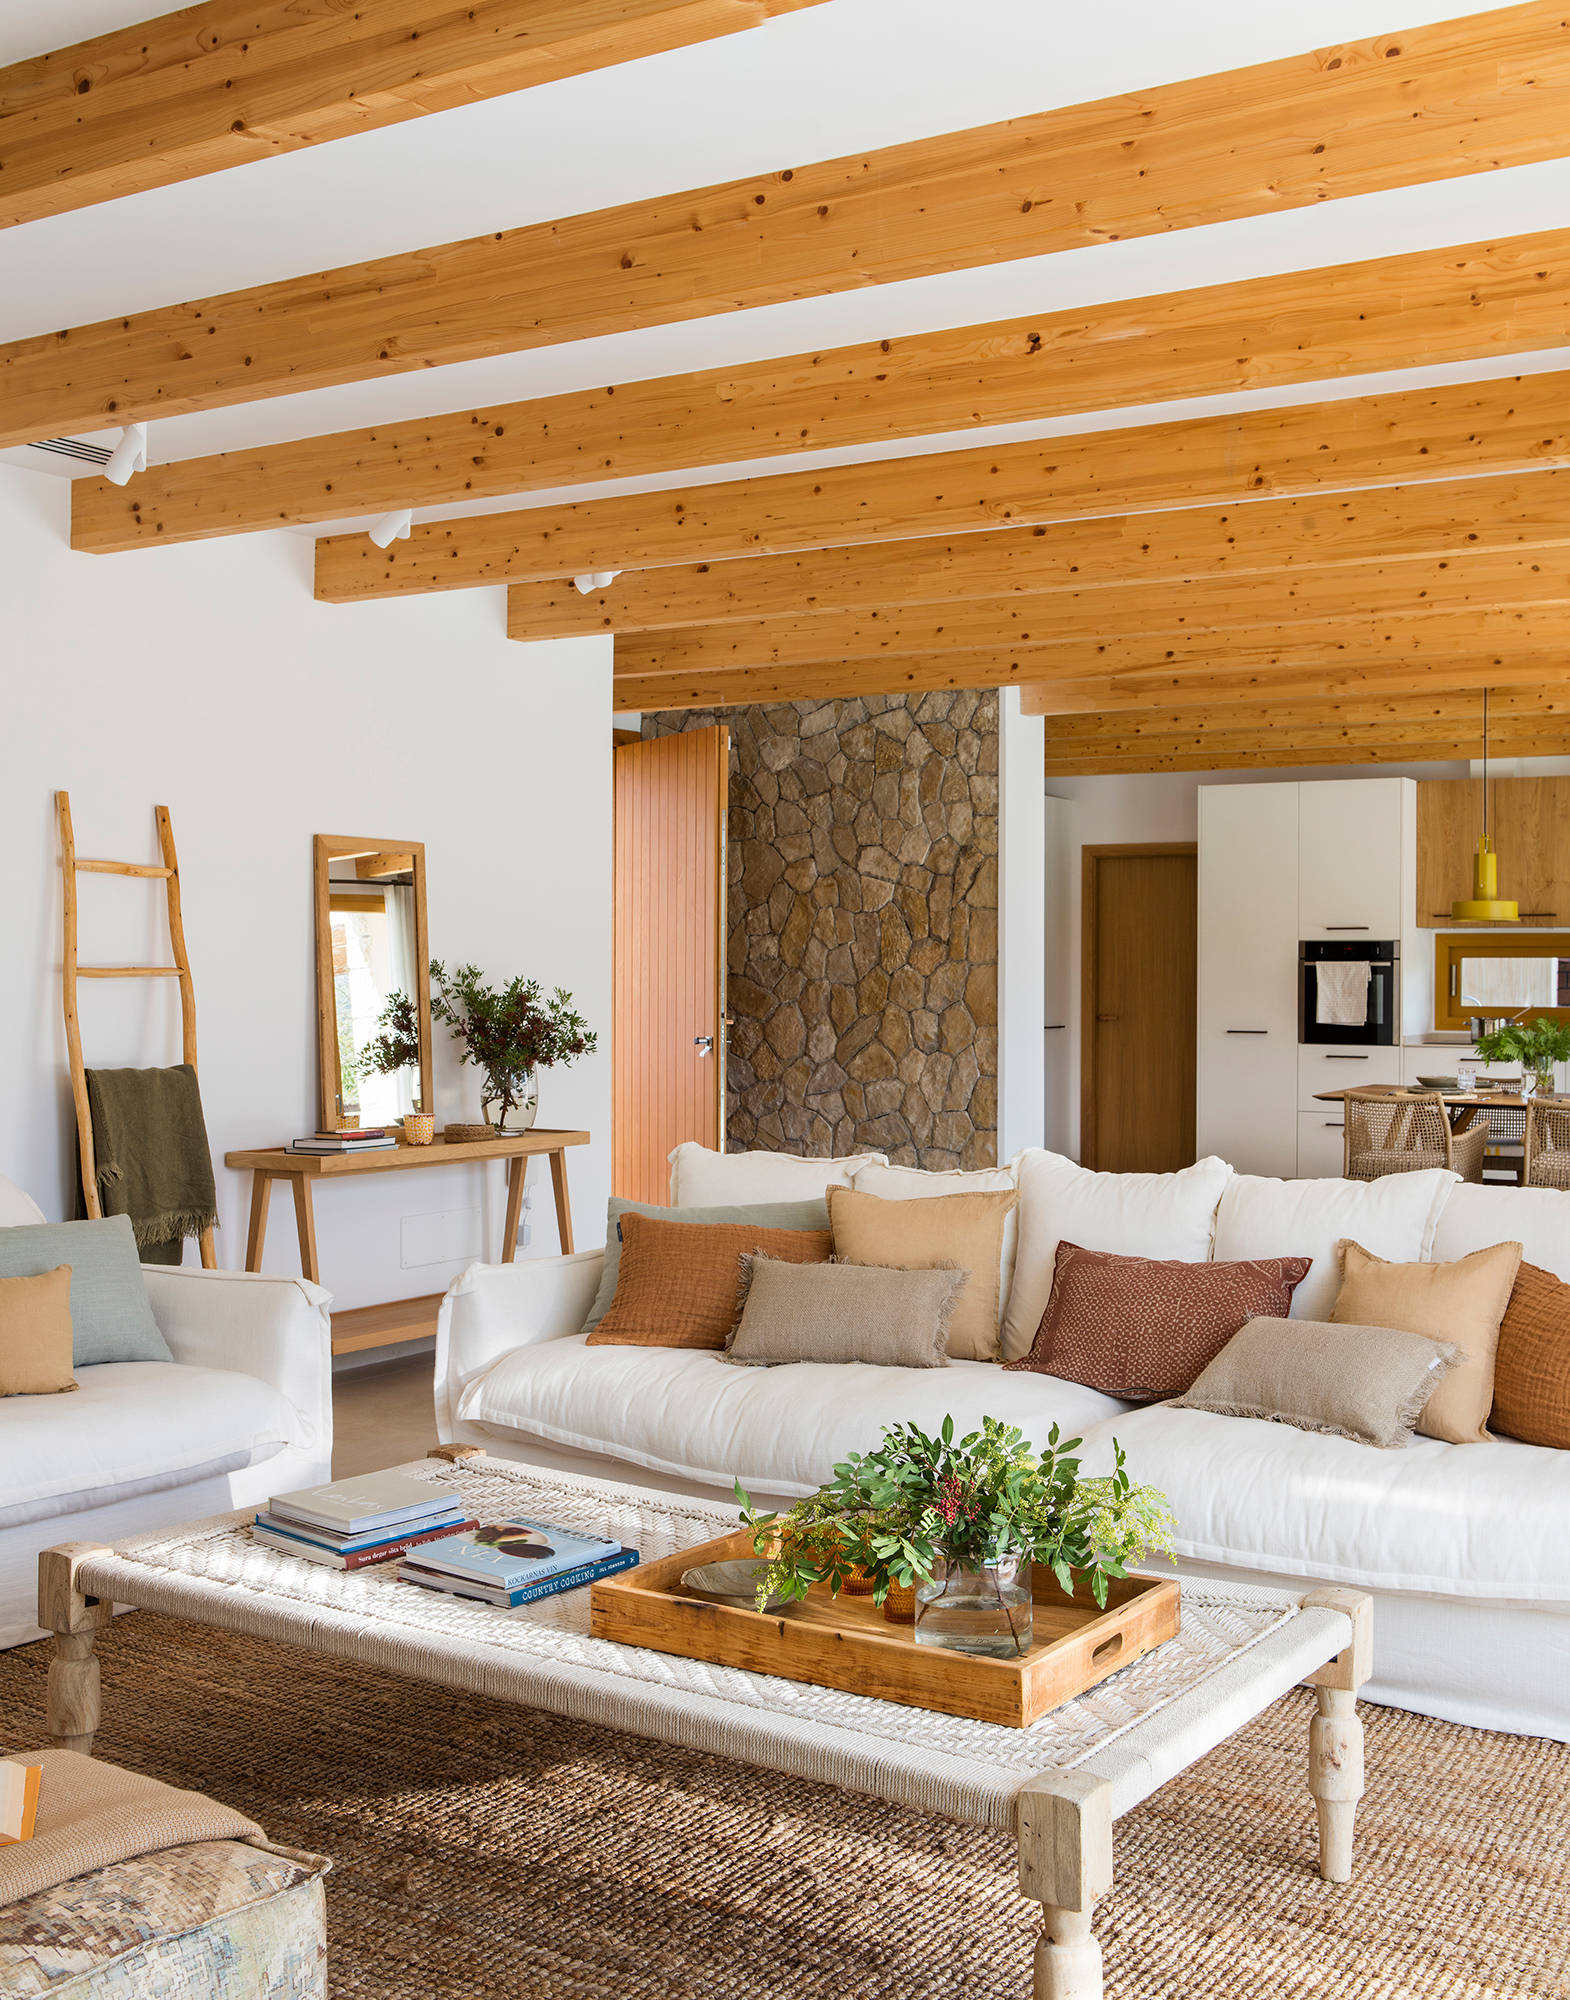 Salón con sofá blanco y vigas madera en techo.